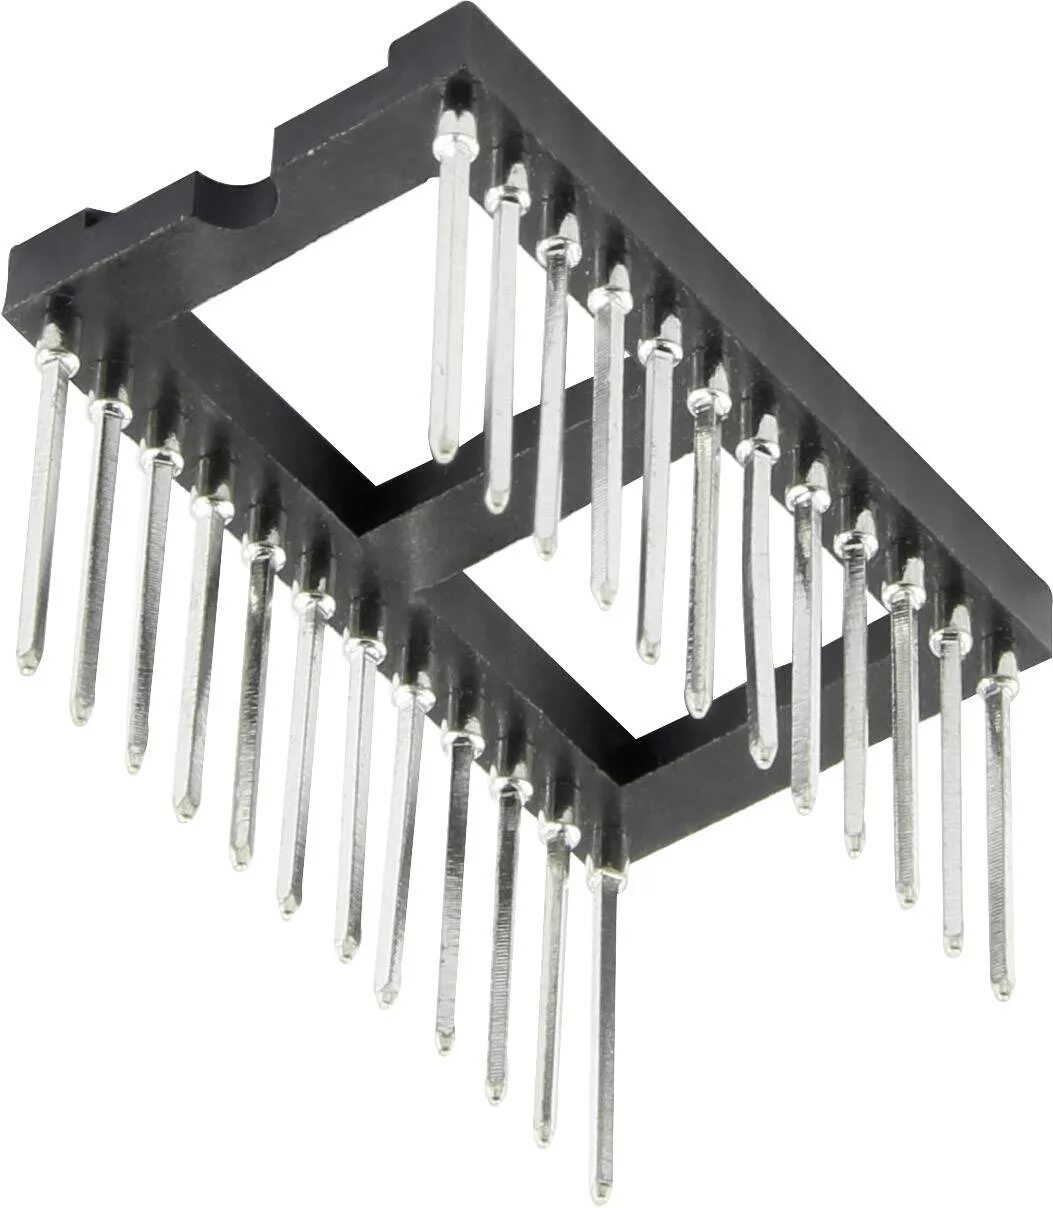 Микросхема под. Панелька для микросхем SOP-8. Qfn40 панелька под микросхему. Панелька для микросхем рсн6-1 85. Панель 1.27 мм для микросхем быстрозажим.